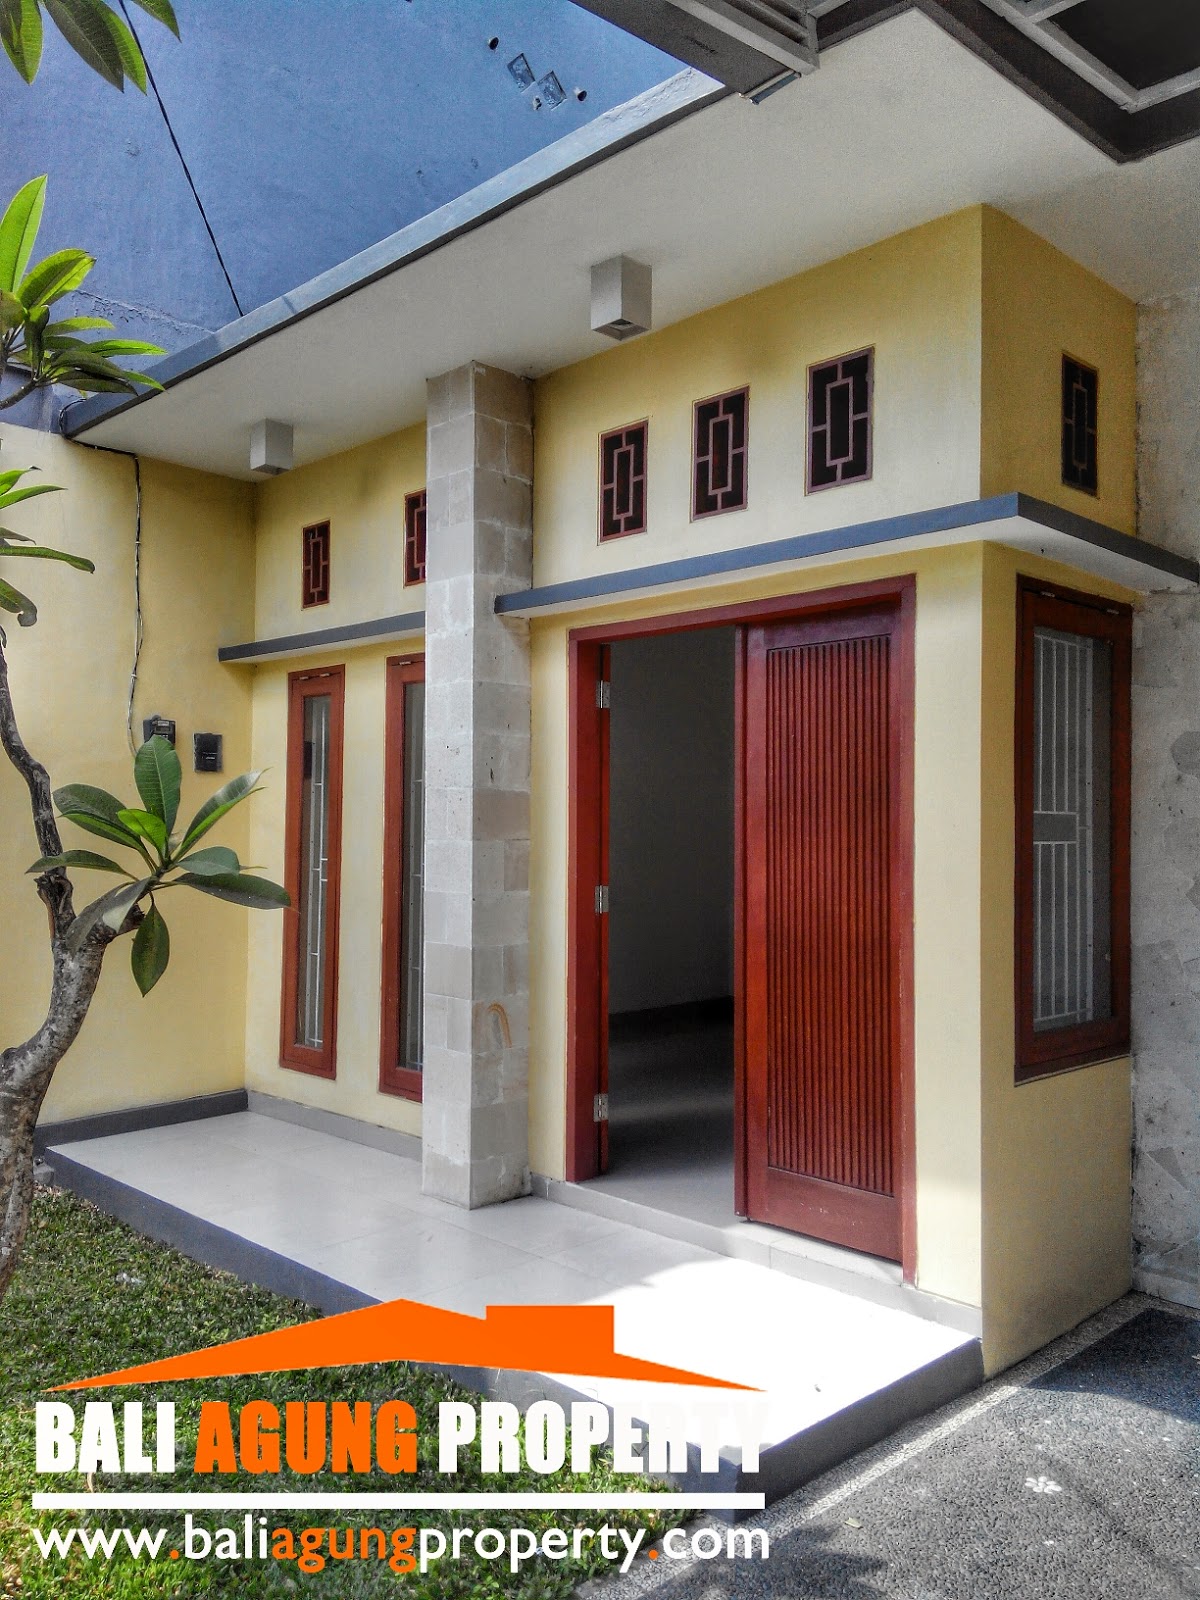 Bali Agung Property Rumah Minimalis Tipe 80 100 Mutiara Indah